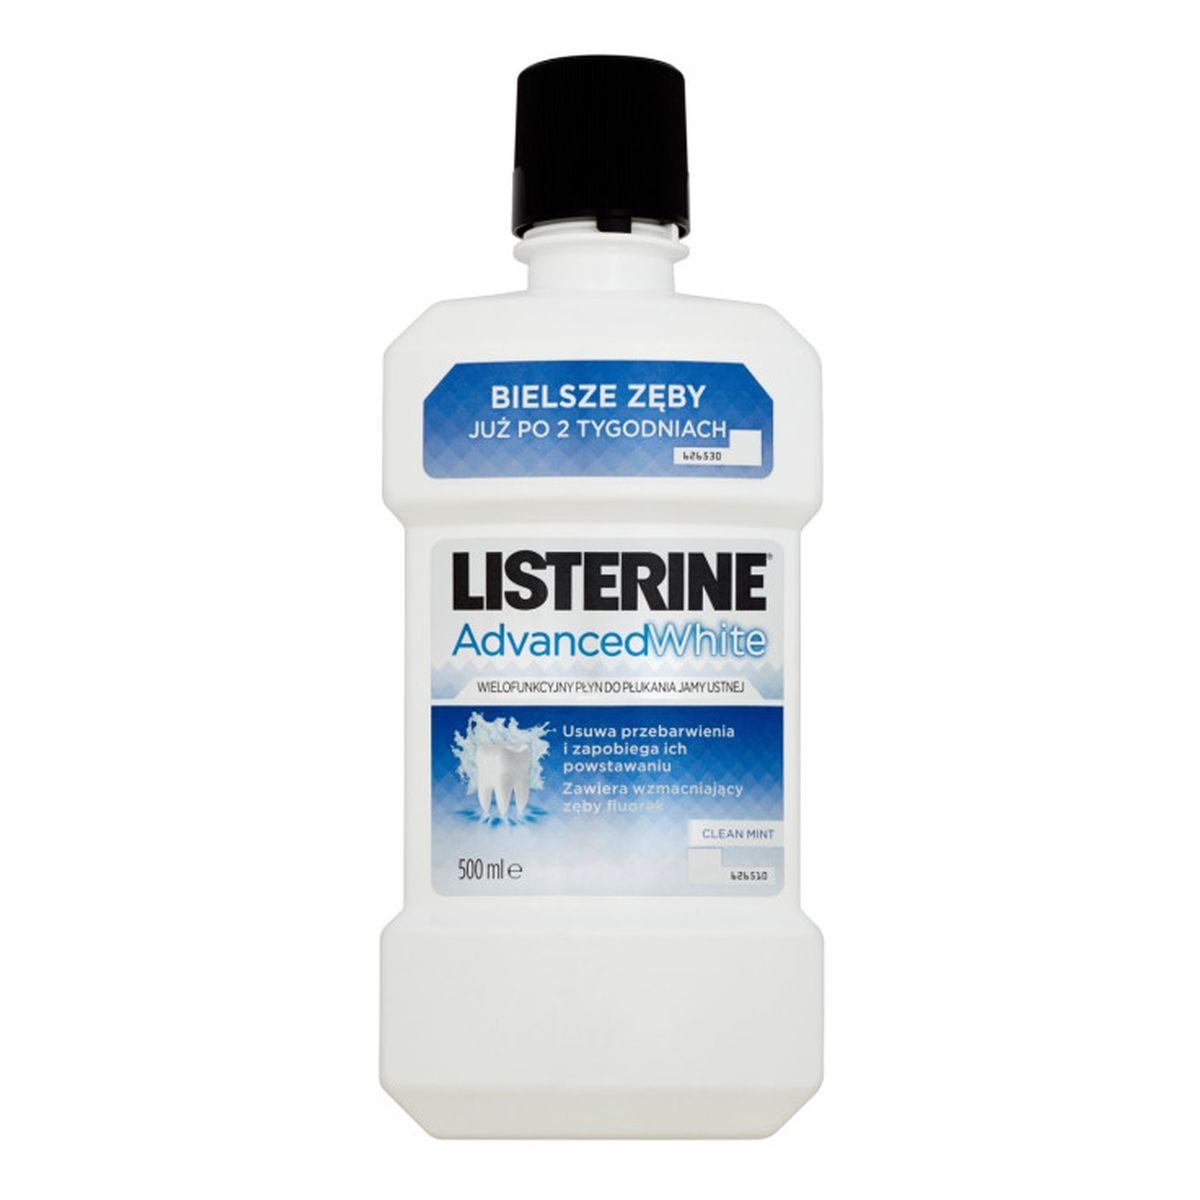 Listerine ADVANCED WHITE WIELOFUNKCYJNY PŁYN DO PŁUKANIA JAMY USTNEJ 500ml